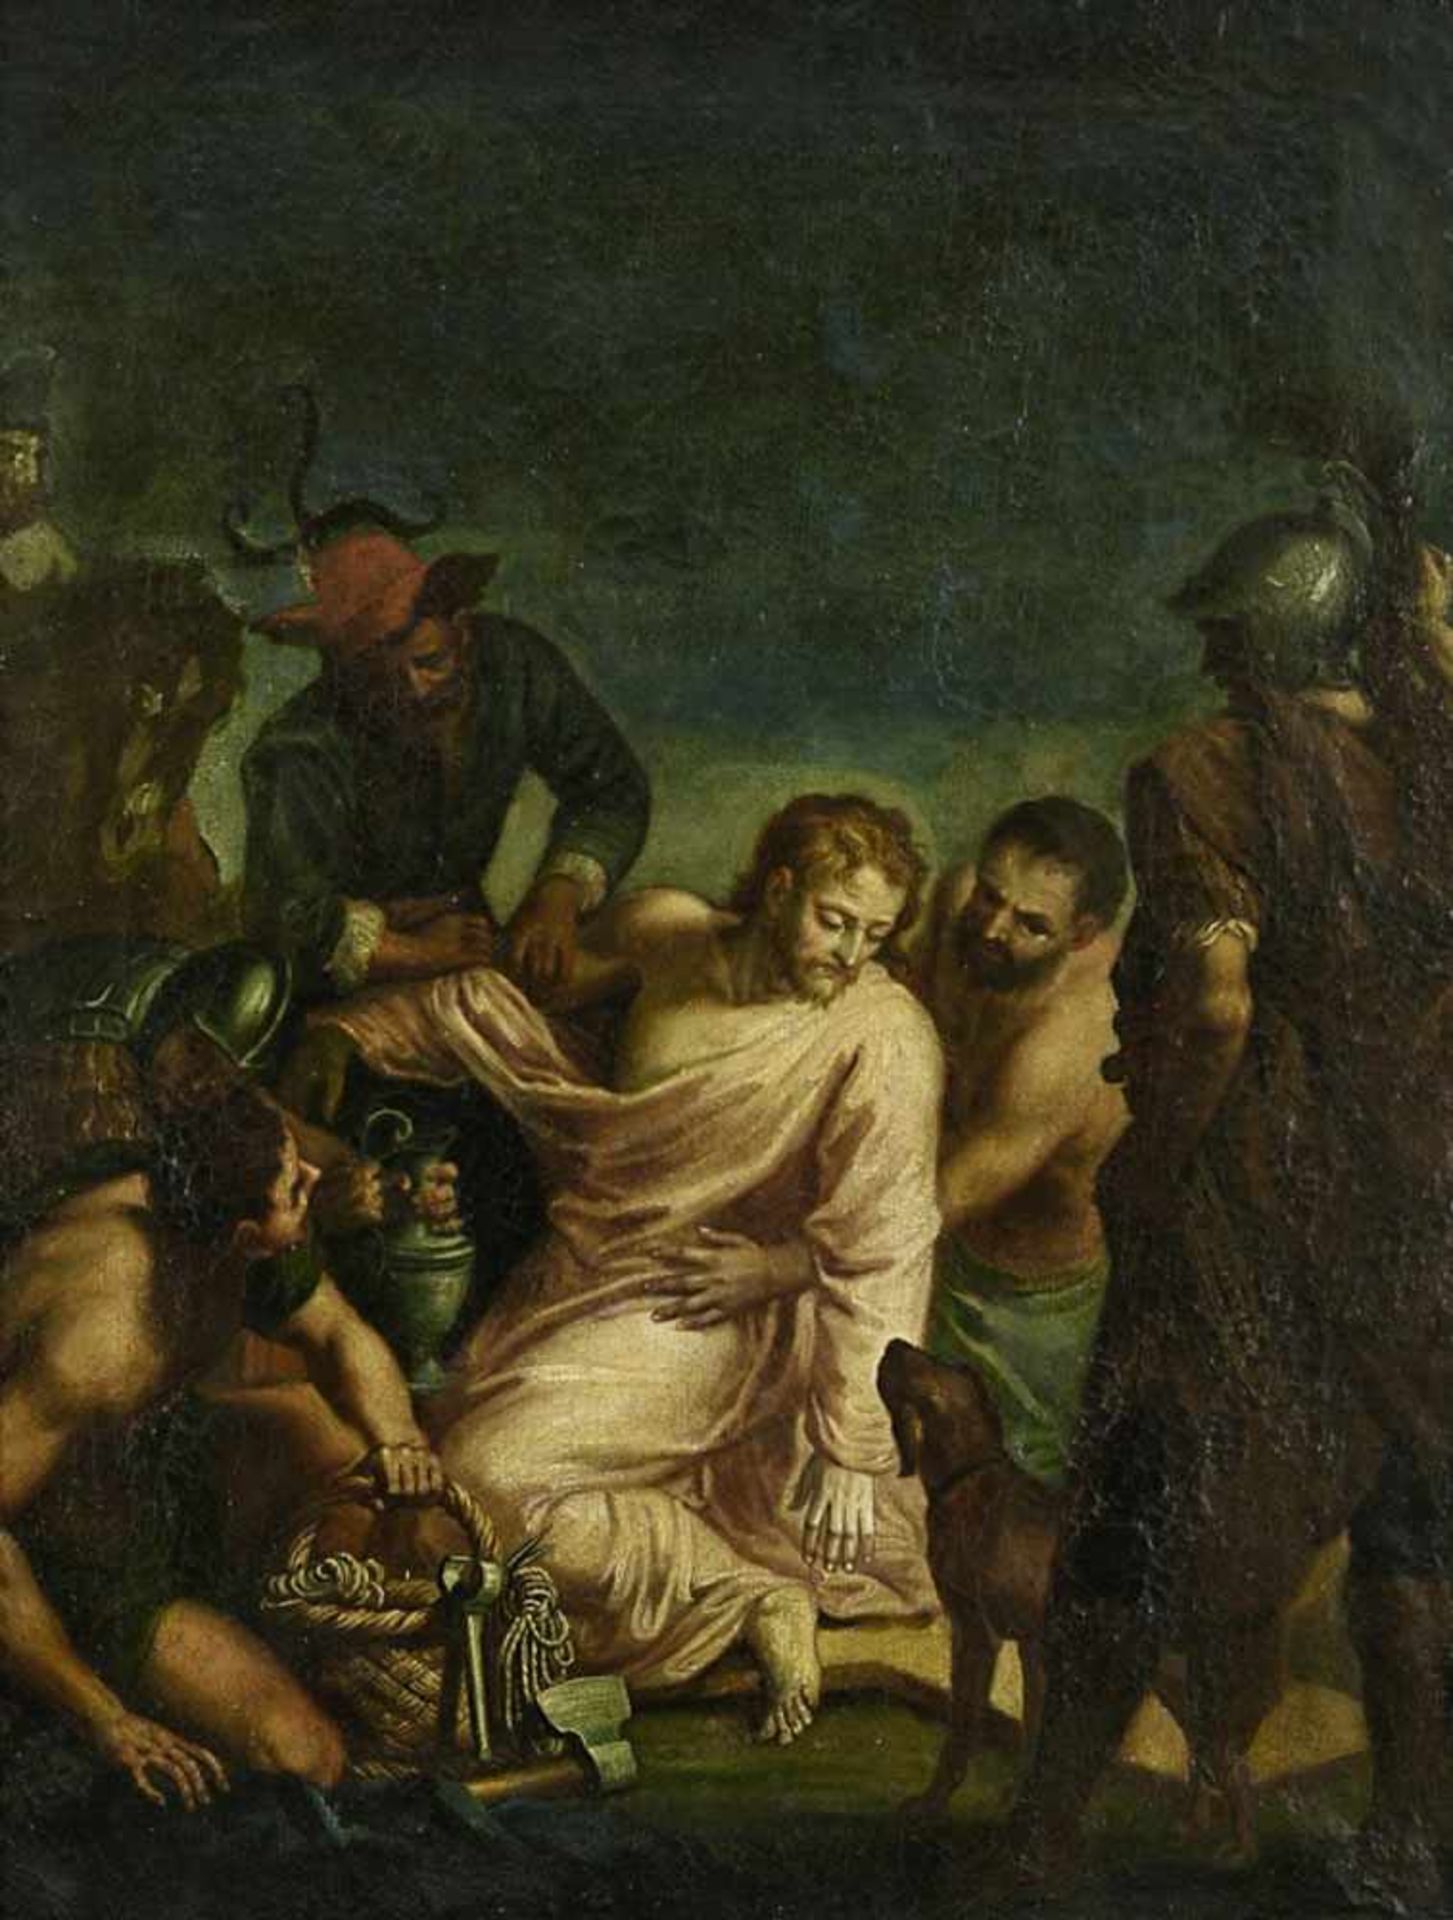 Unbekannt wohl 18. Jh. Jesus wird seiner Kleider beraubt (Mt 27,33-36) Öl/Lwd. 55 x 42 cm.